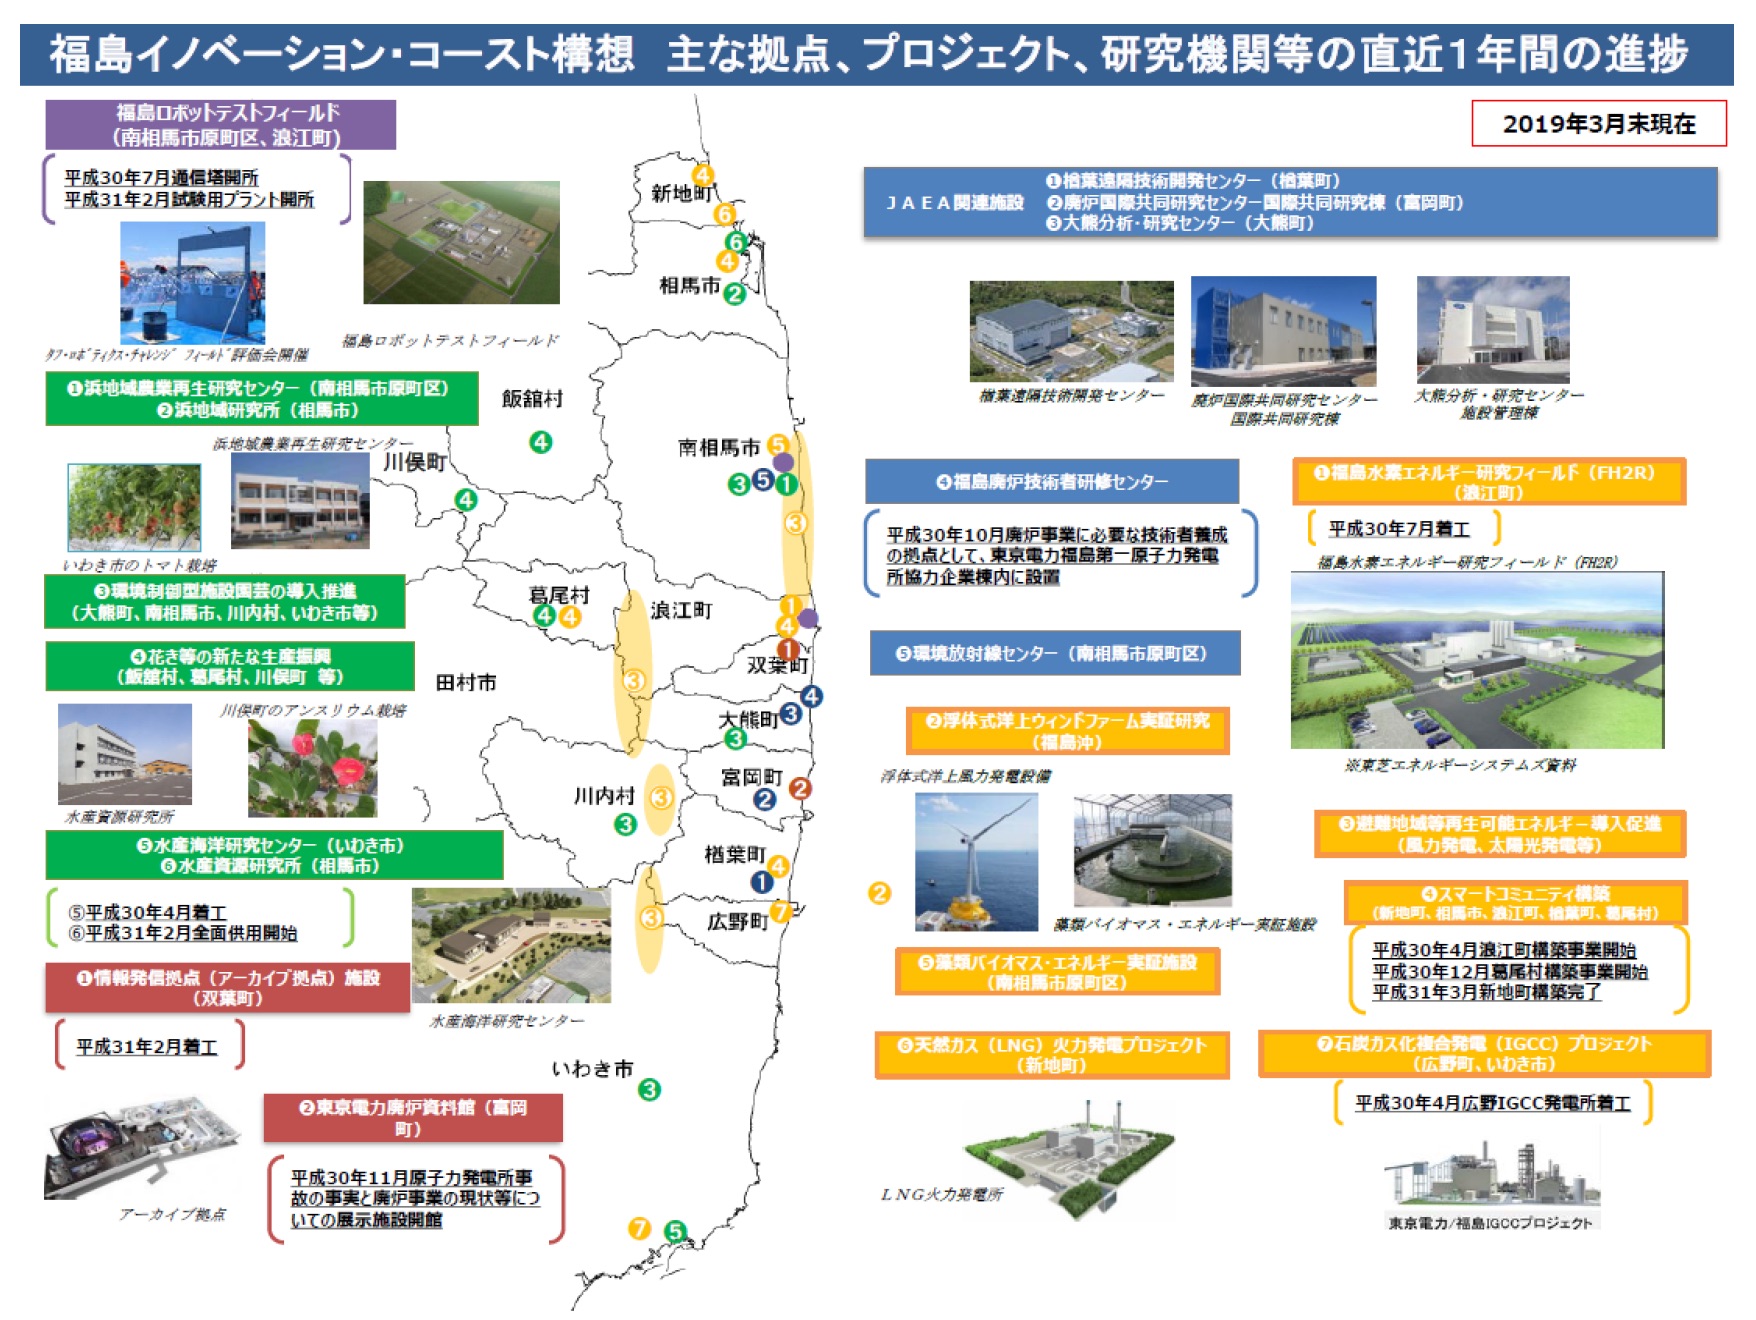 図 1-9 福島イノベーション・コースト構想の進展状況（2019年３月末時点）